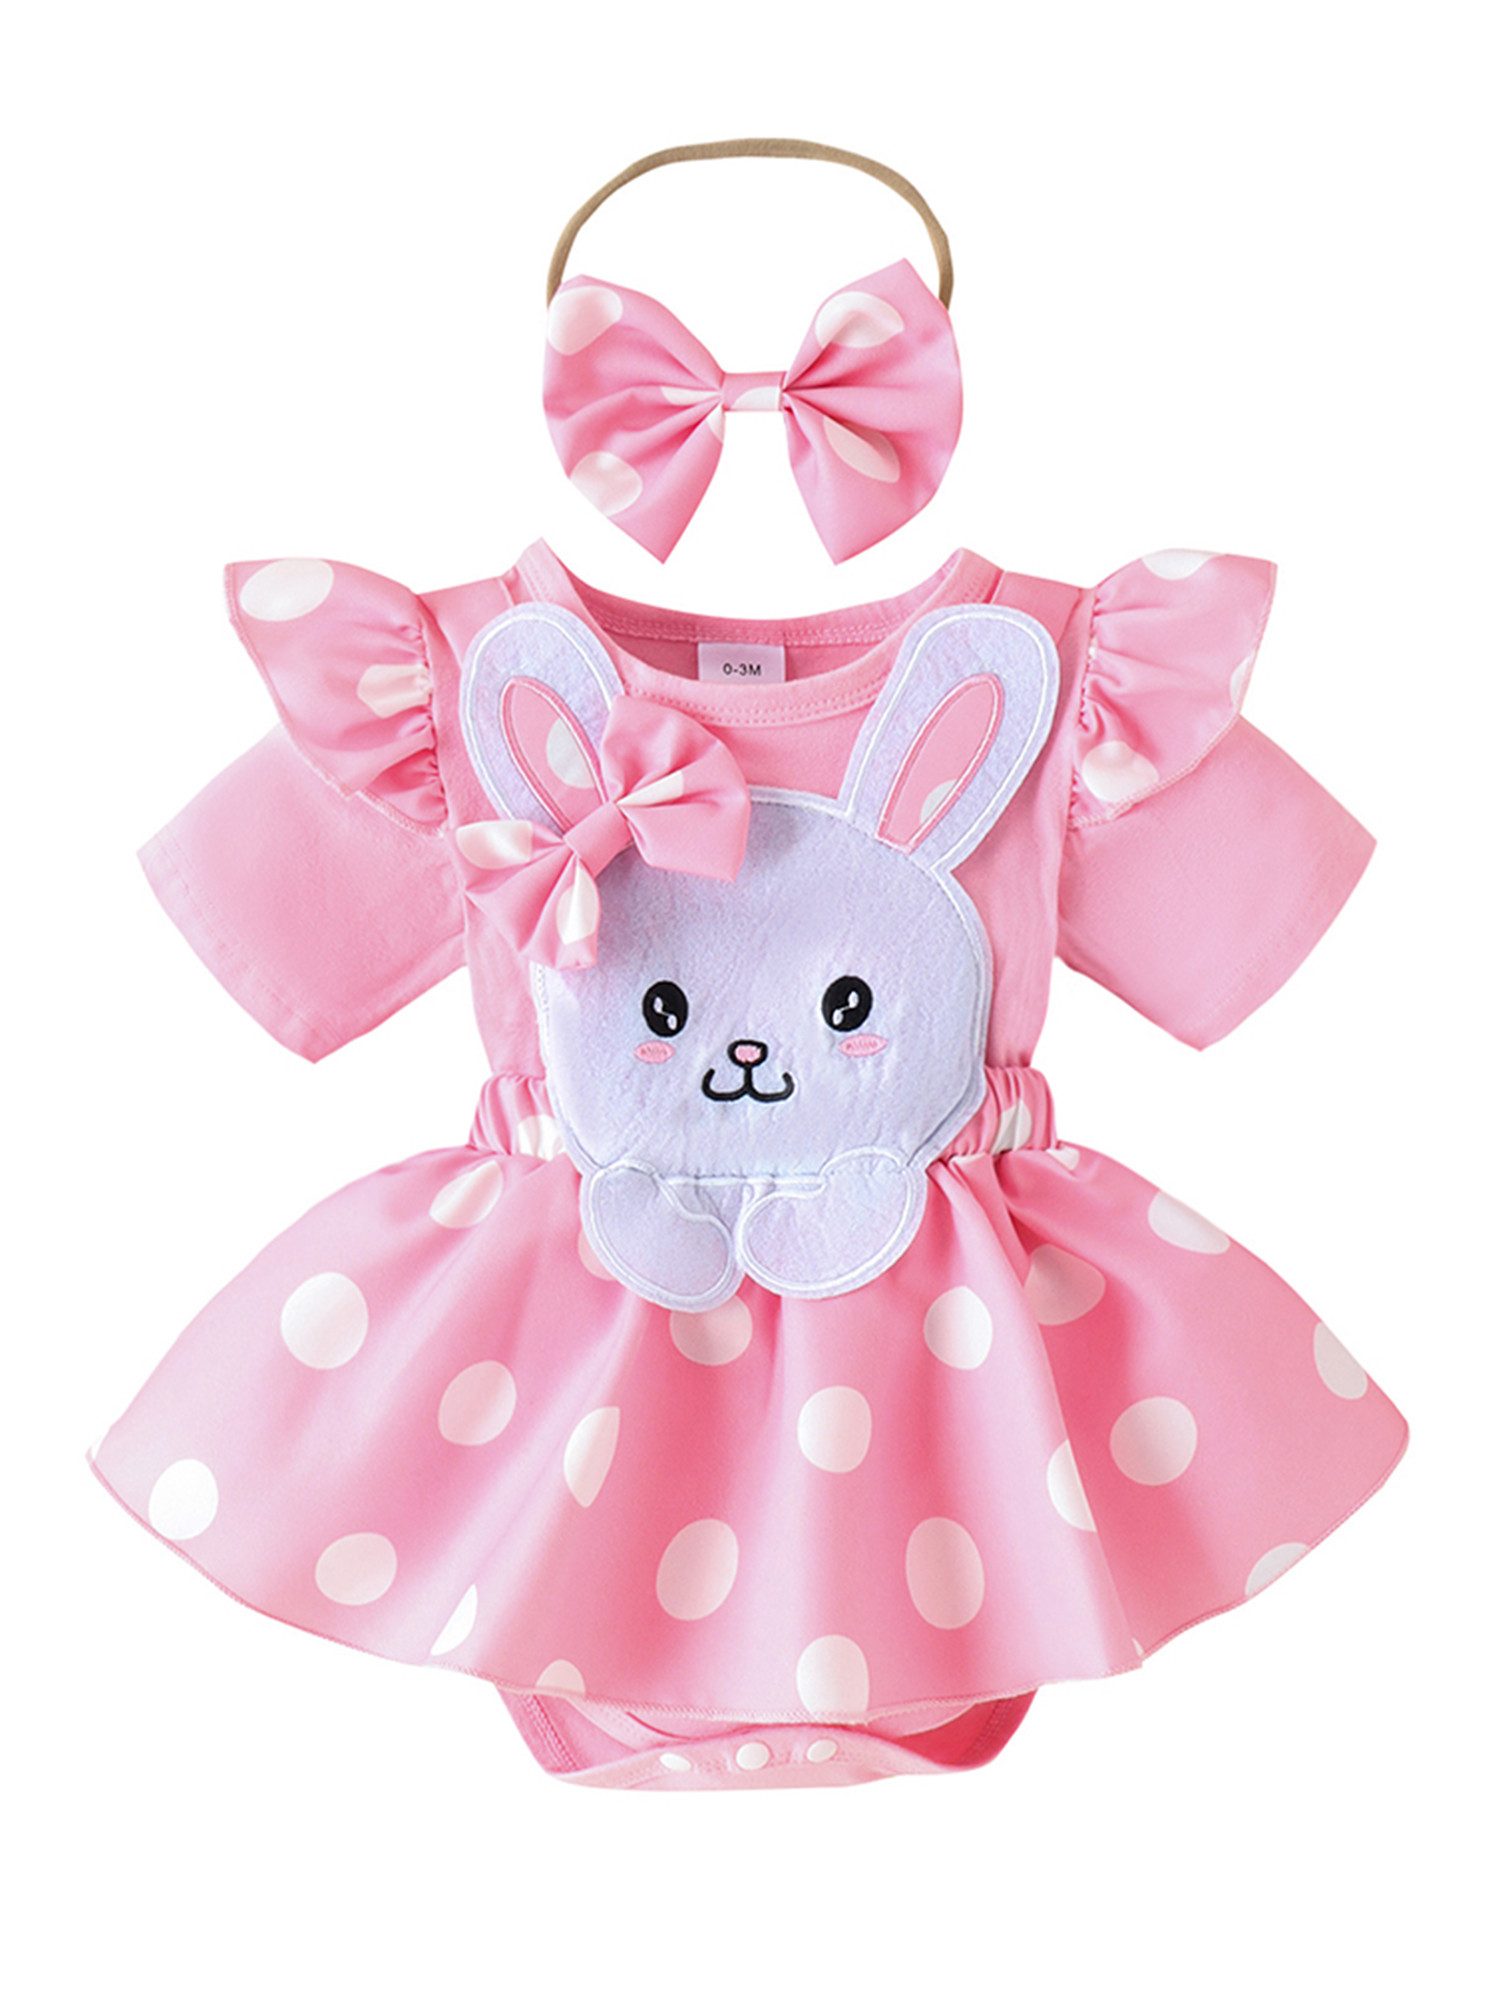 LAPA Strampler Baby Mädchen Outfits süßes Partykleid mit Rüschen Kaninchenmuster (Strampler Kleid & Haarband, 2-tlg) Rosa Strampler Anzug mit Stirnband, Kleid mit verspieltem Polka dot